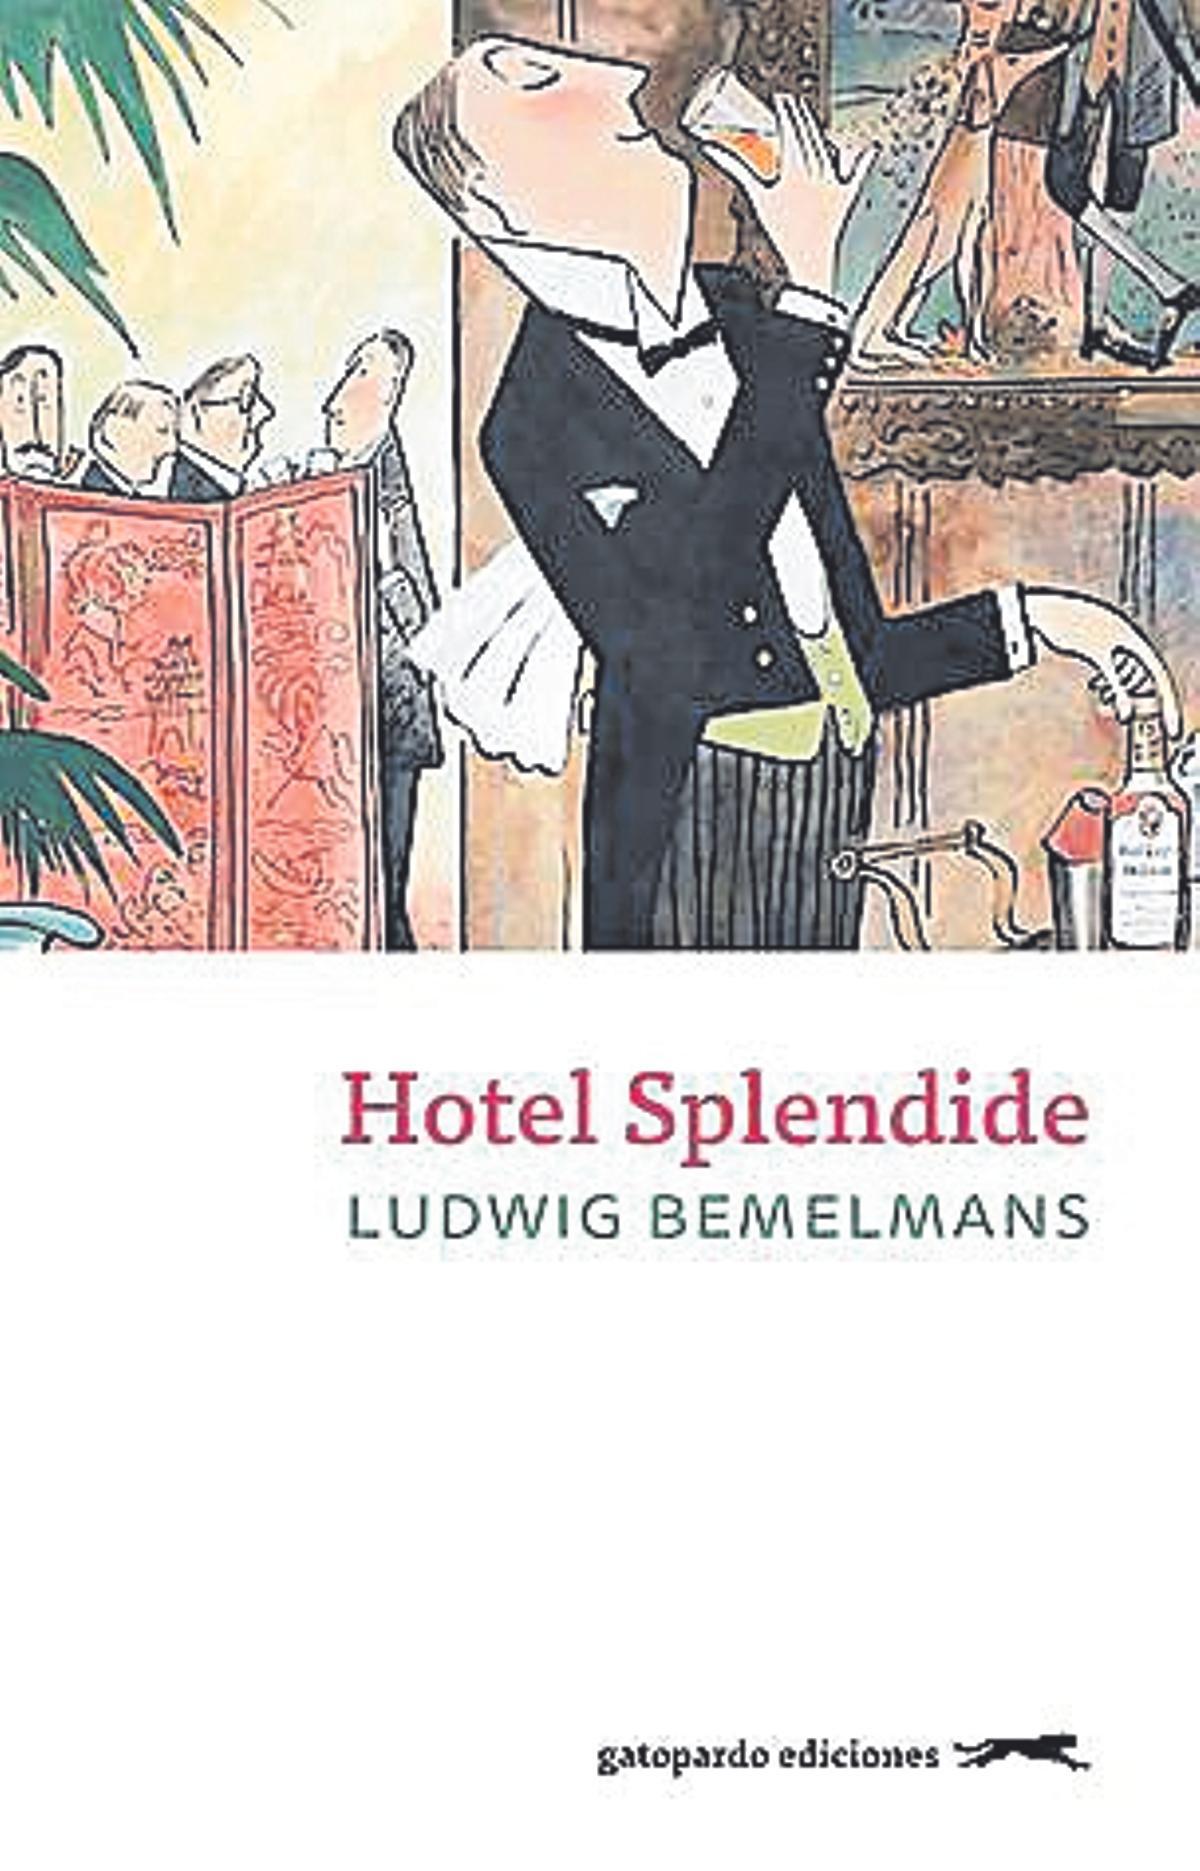 Ludwig Bemelmans  Hotel Splendide   gatopardo ediciones  224 páginas   20,95 euros